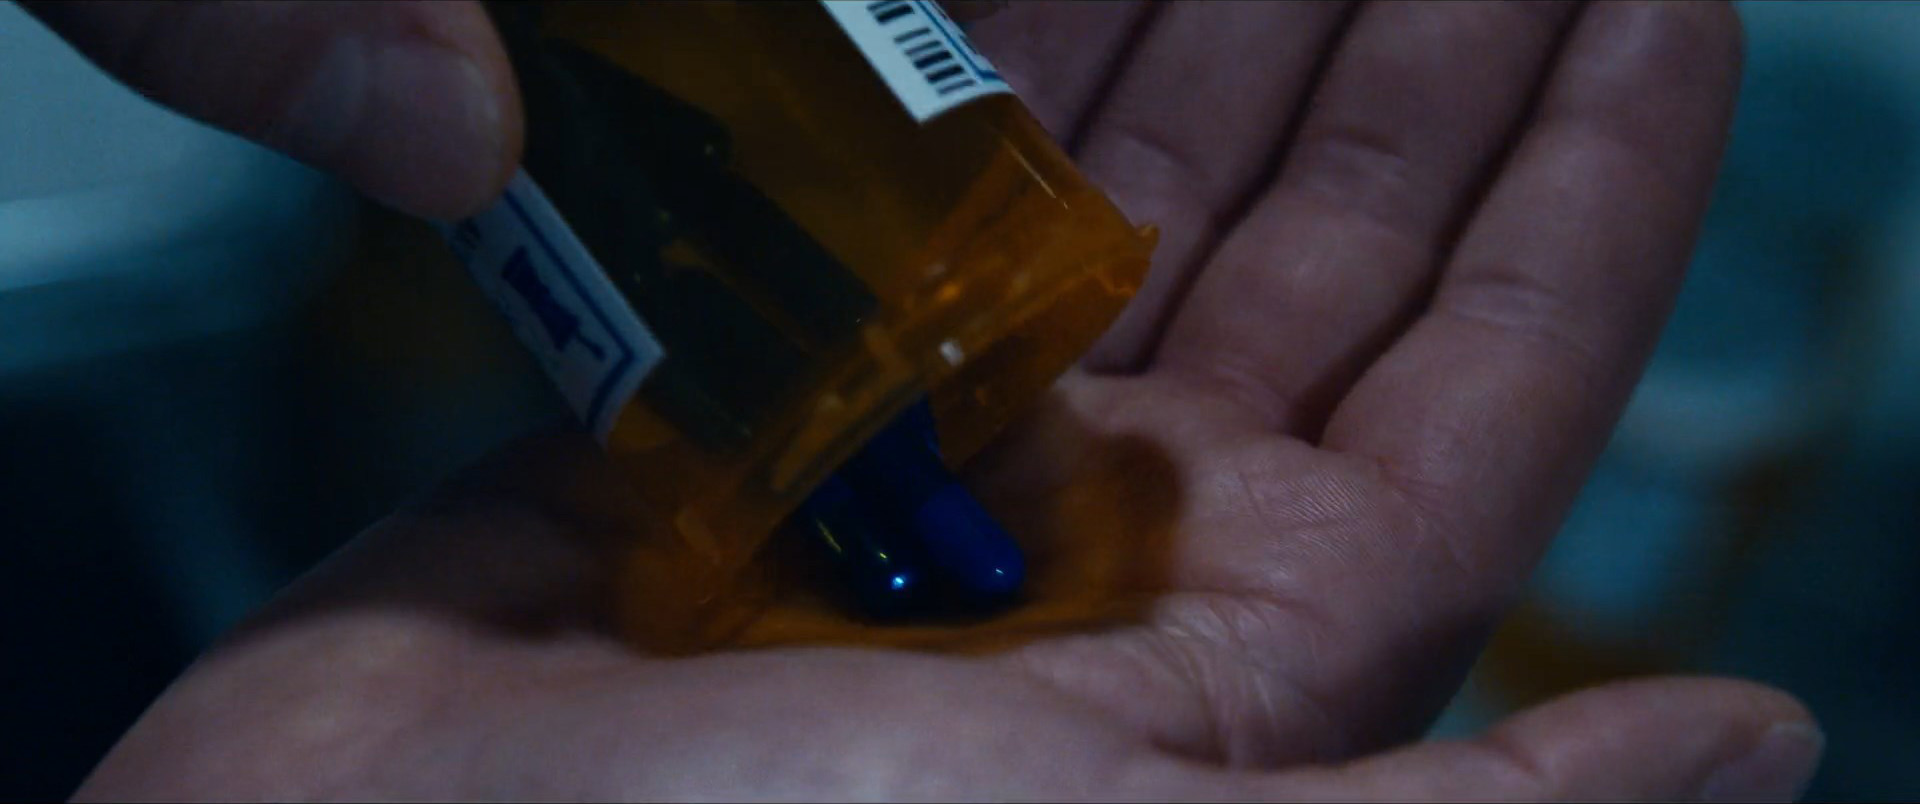 The Matrix Resurrections Still 20 Blue Pills